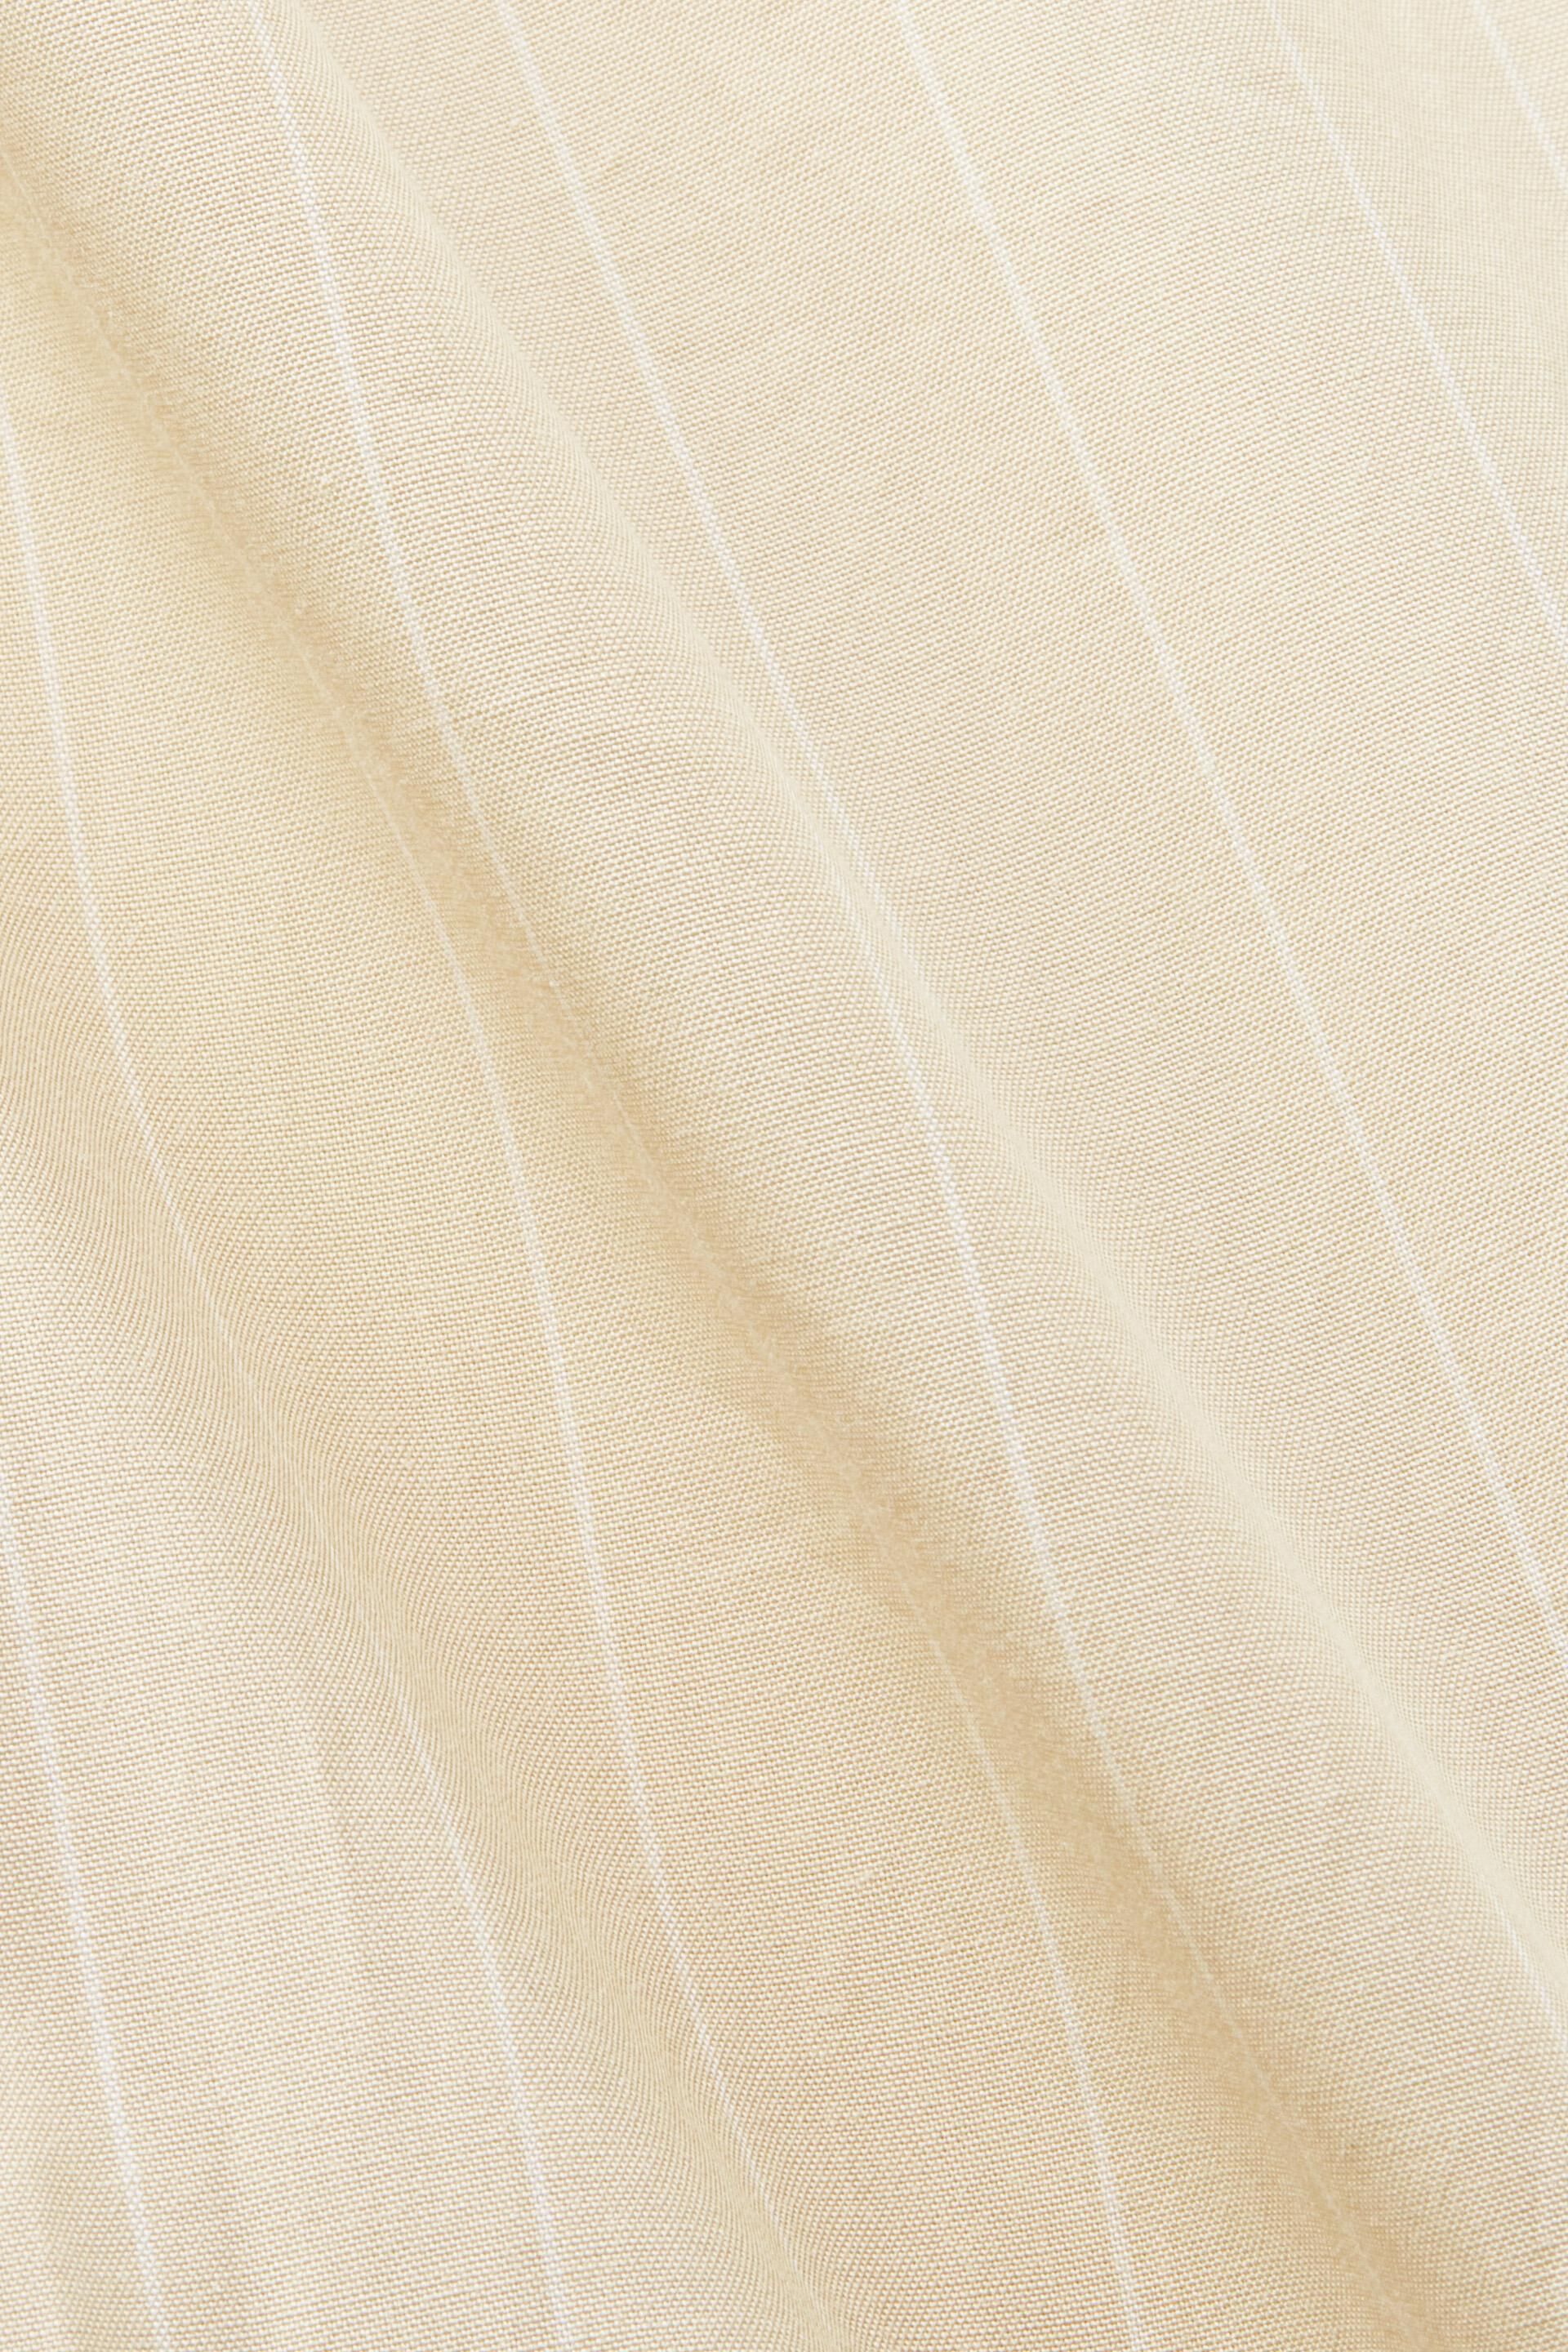 Esprit Damen Hemdblusenkleid mit Nadelstreifen, 100 % Baumwolle